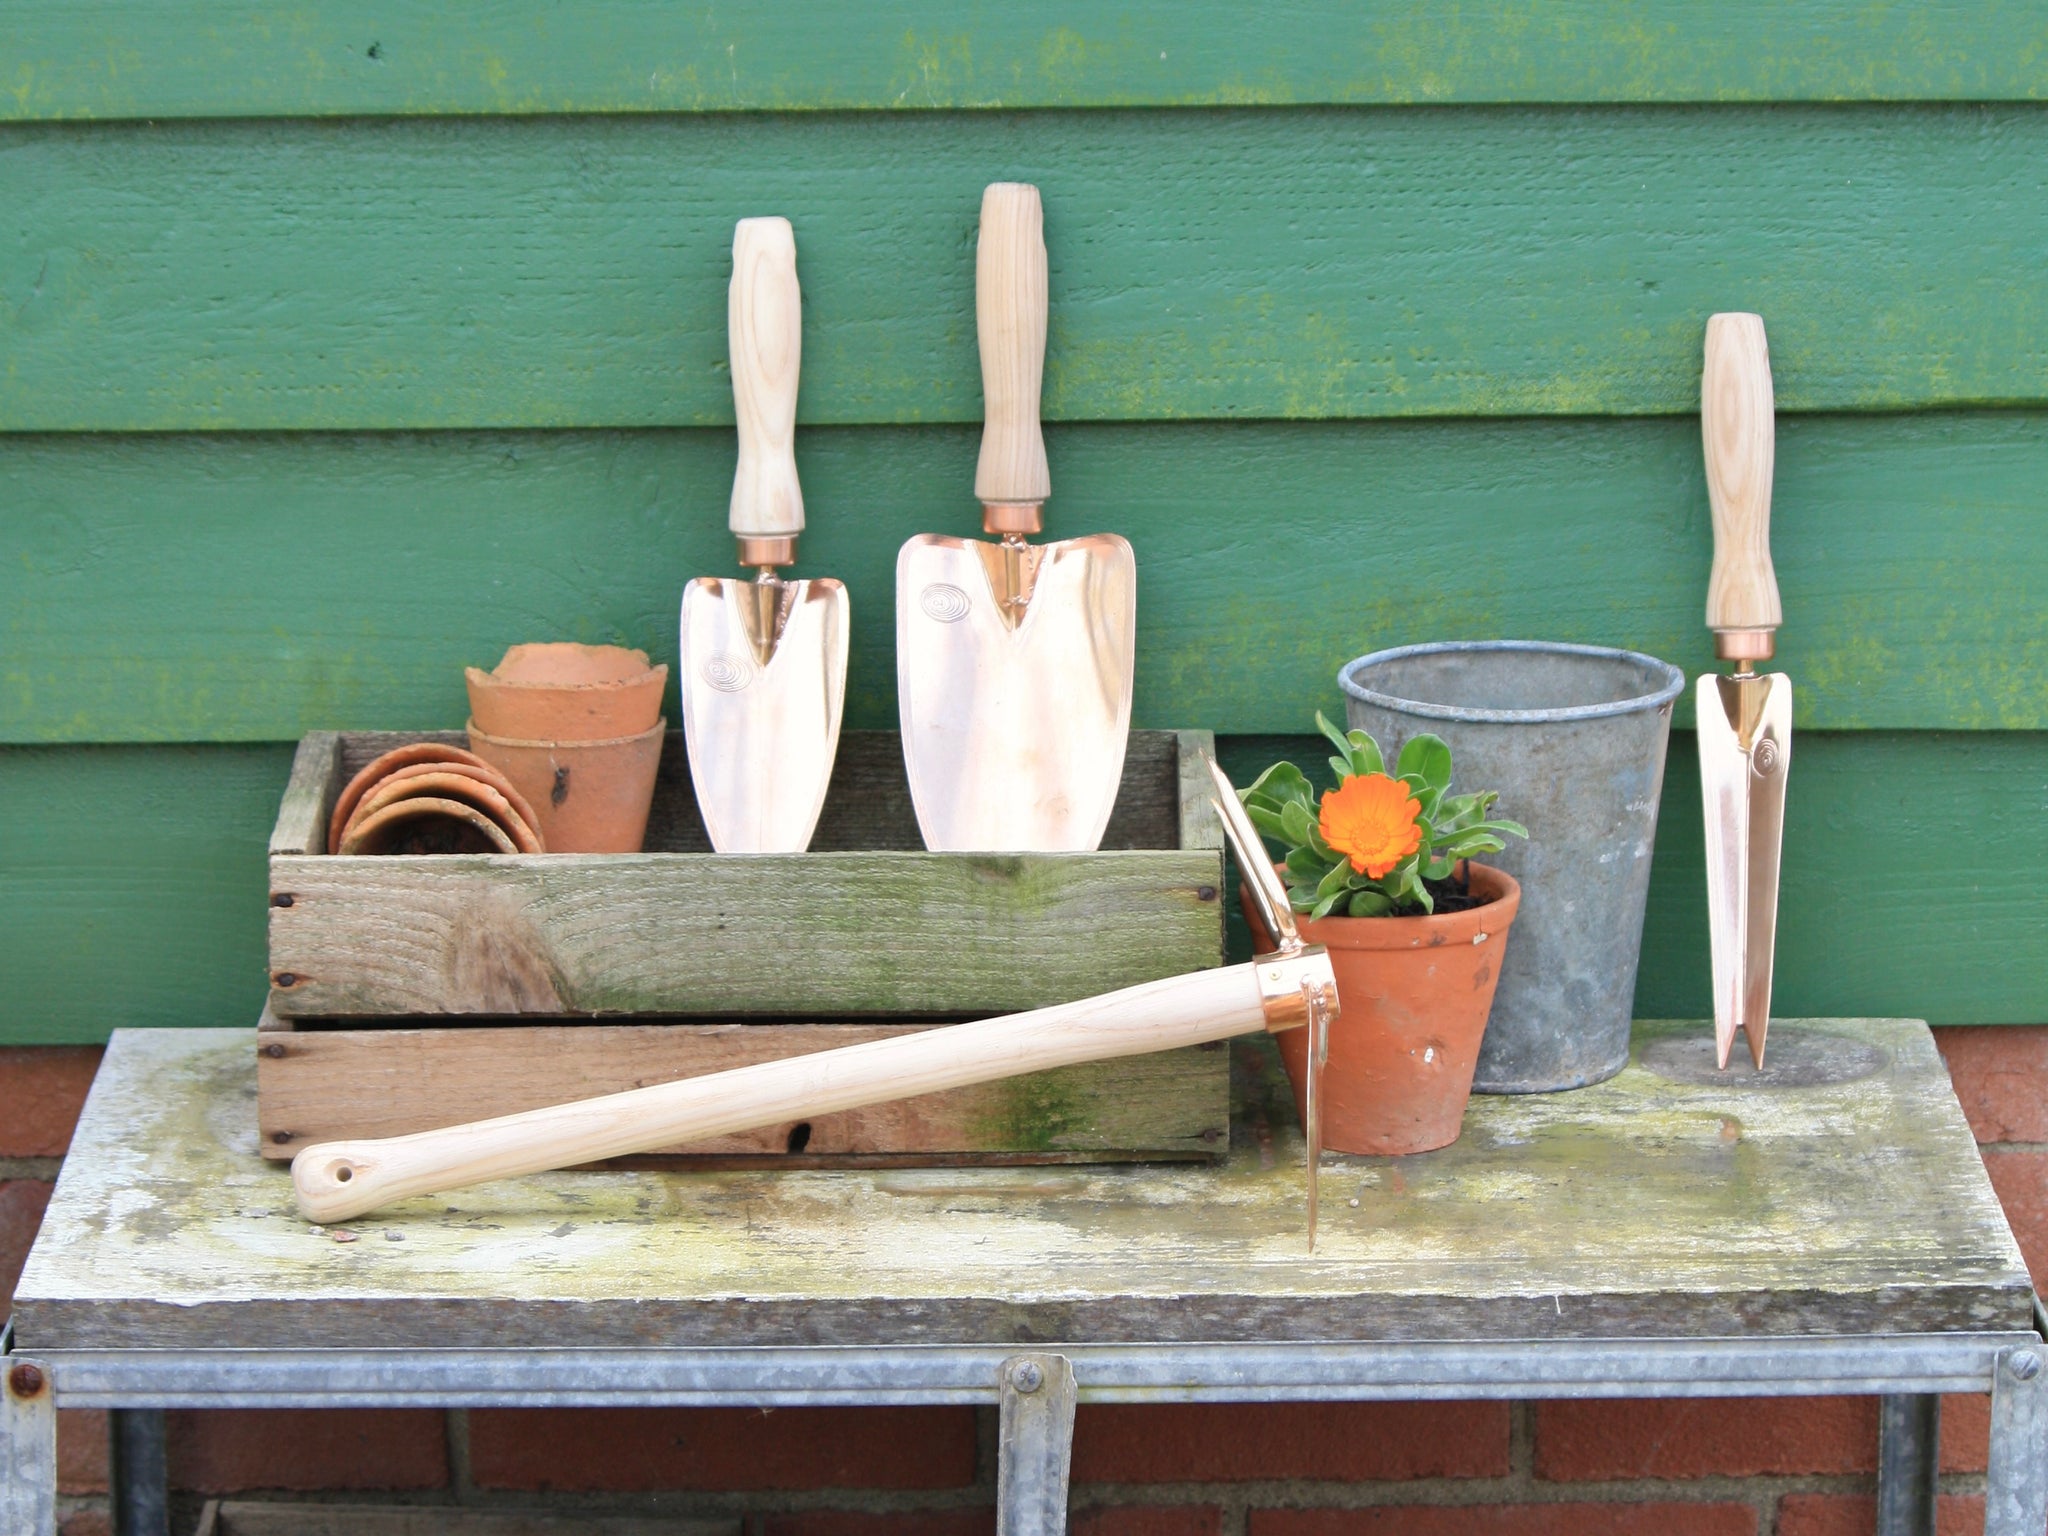 Copper garden tools